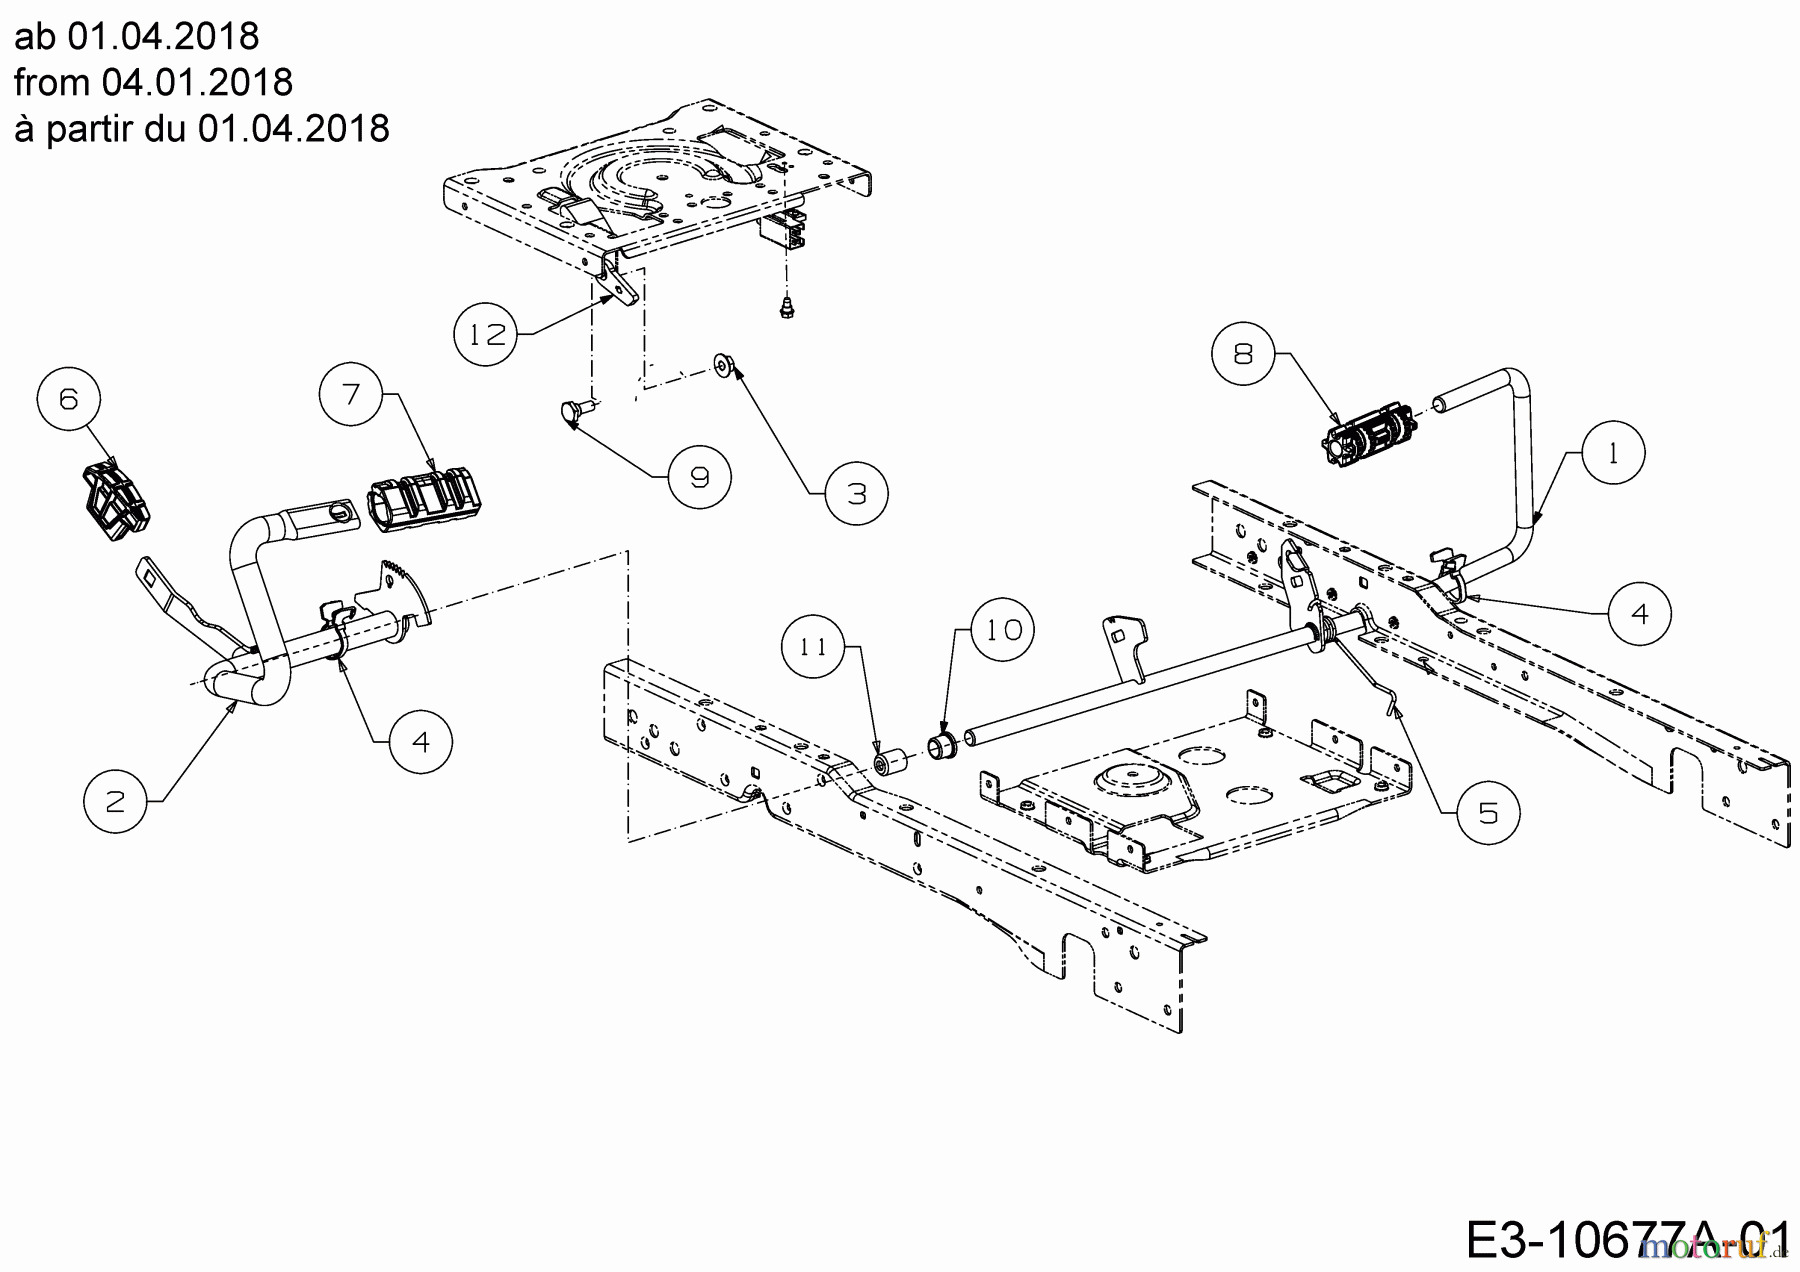  Cub Cadet Lawn tractors XT2 PS117I 13BZA1CN603  (2019) Pedals from 04.01.2018